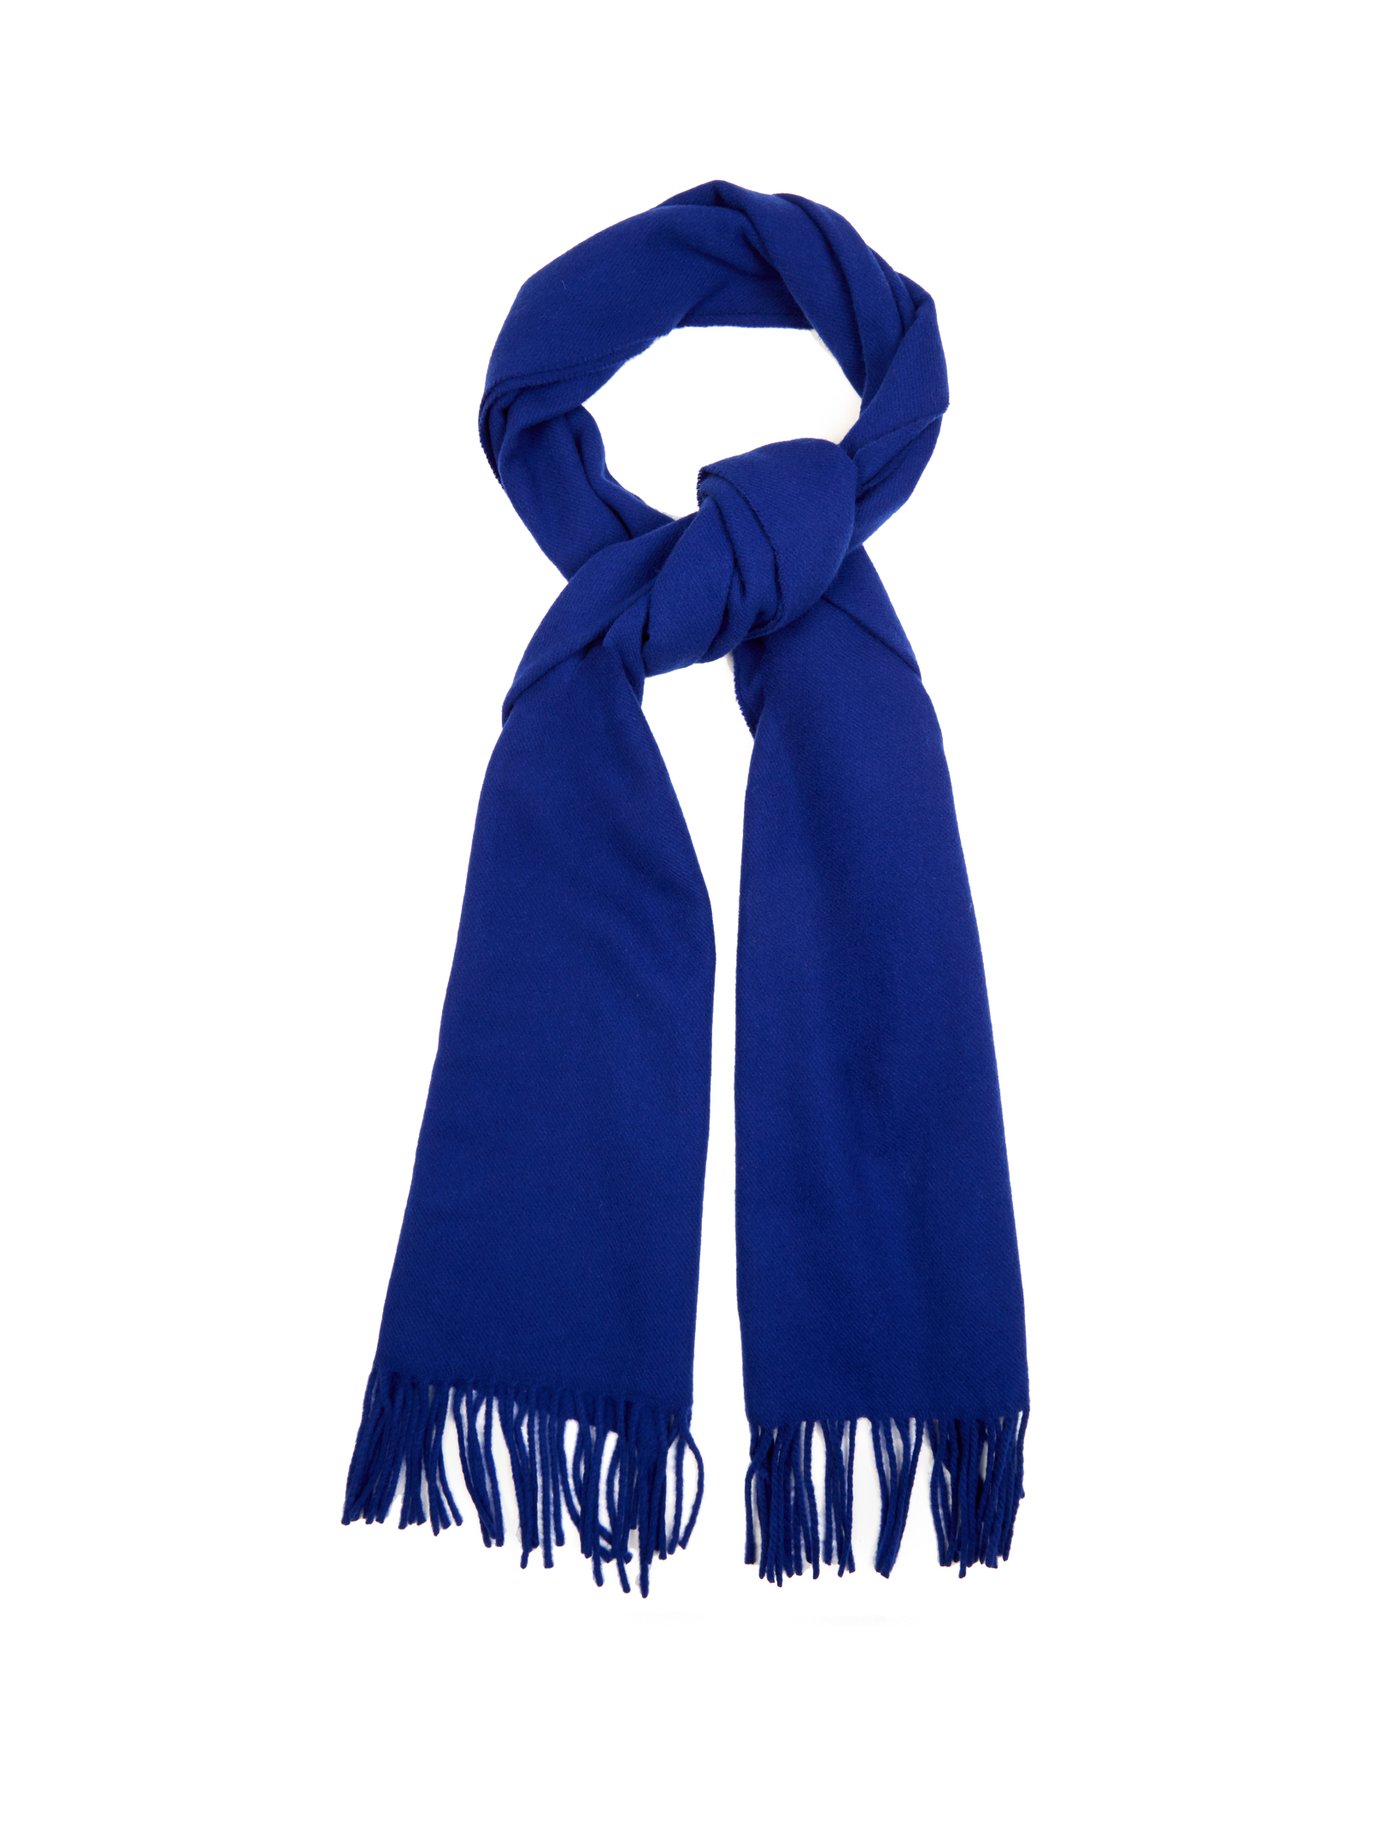 Canada Narrow wool scarf